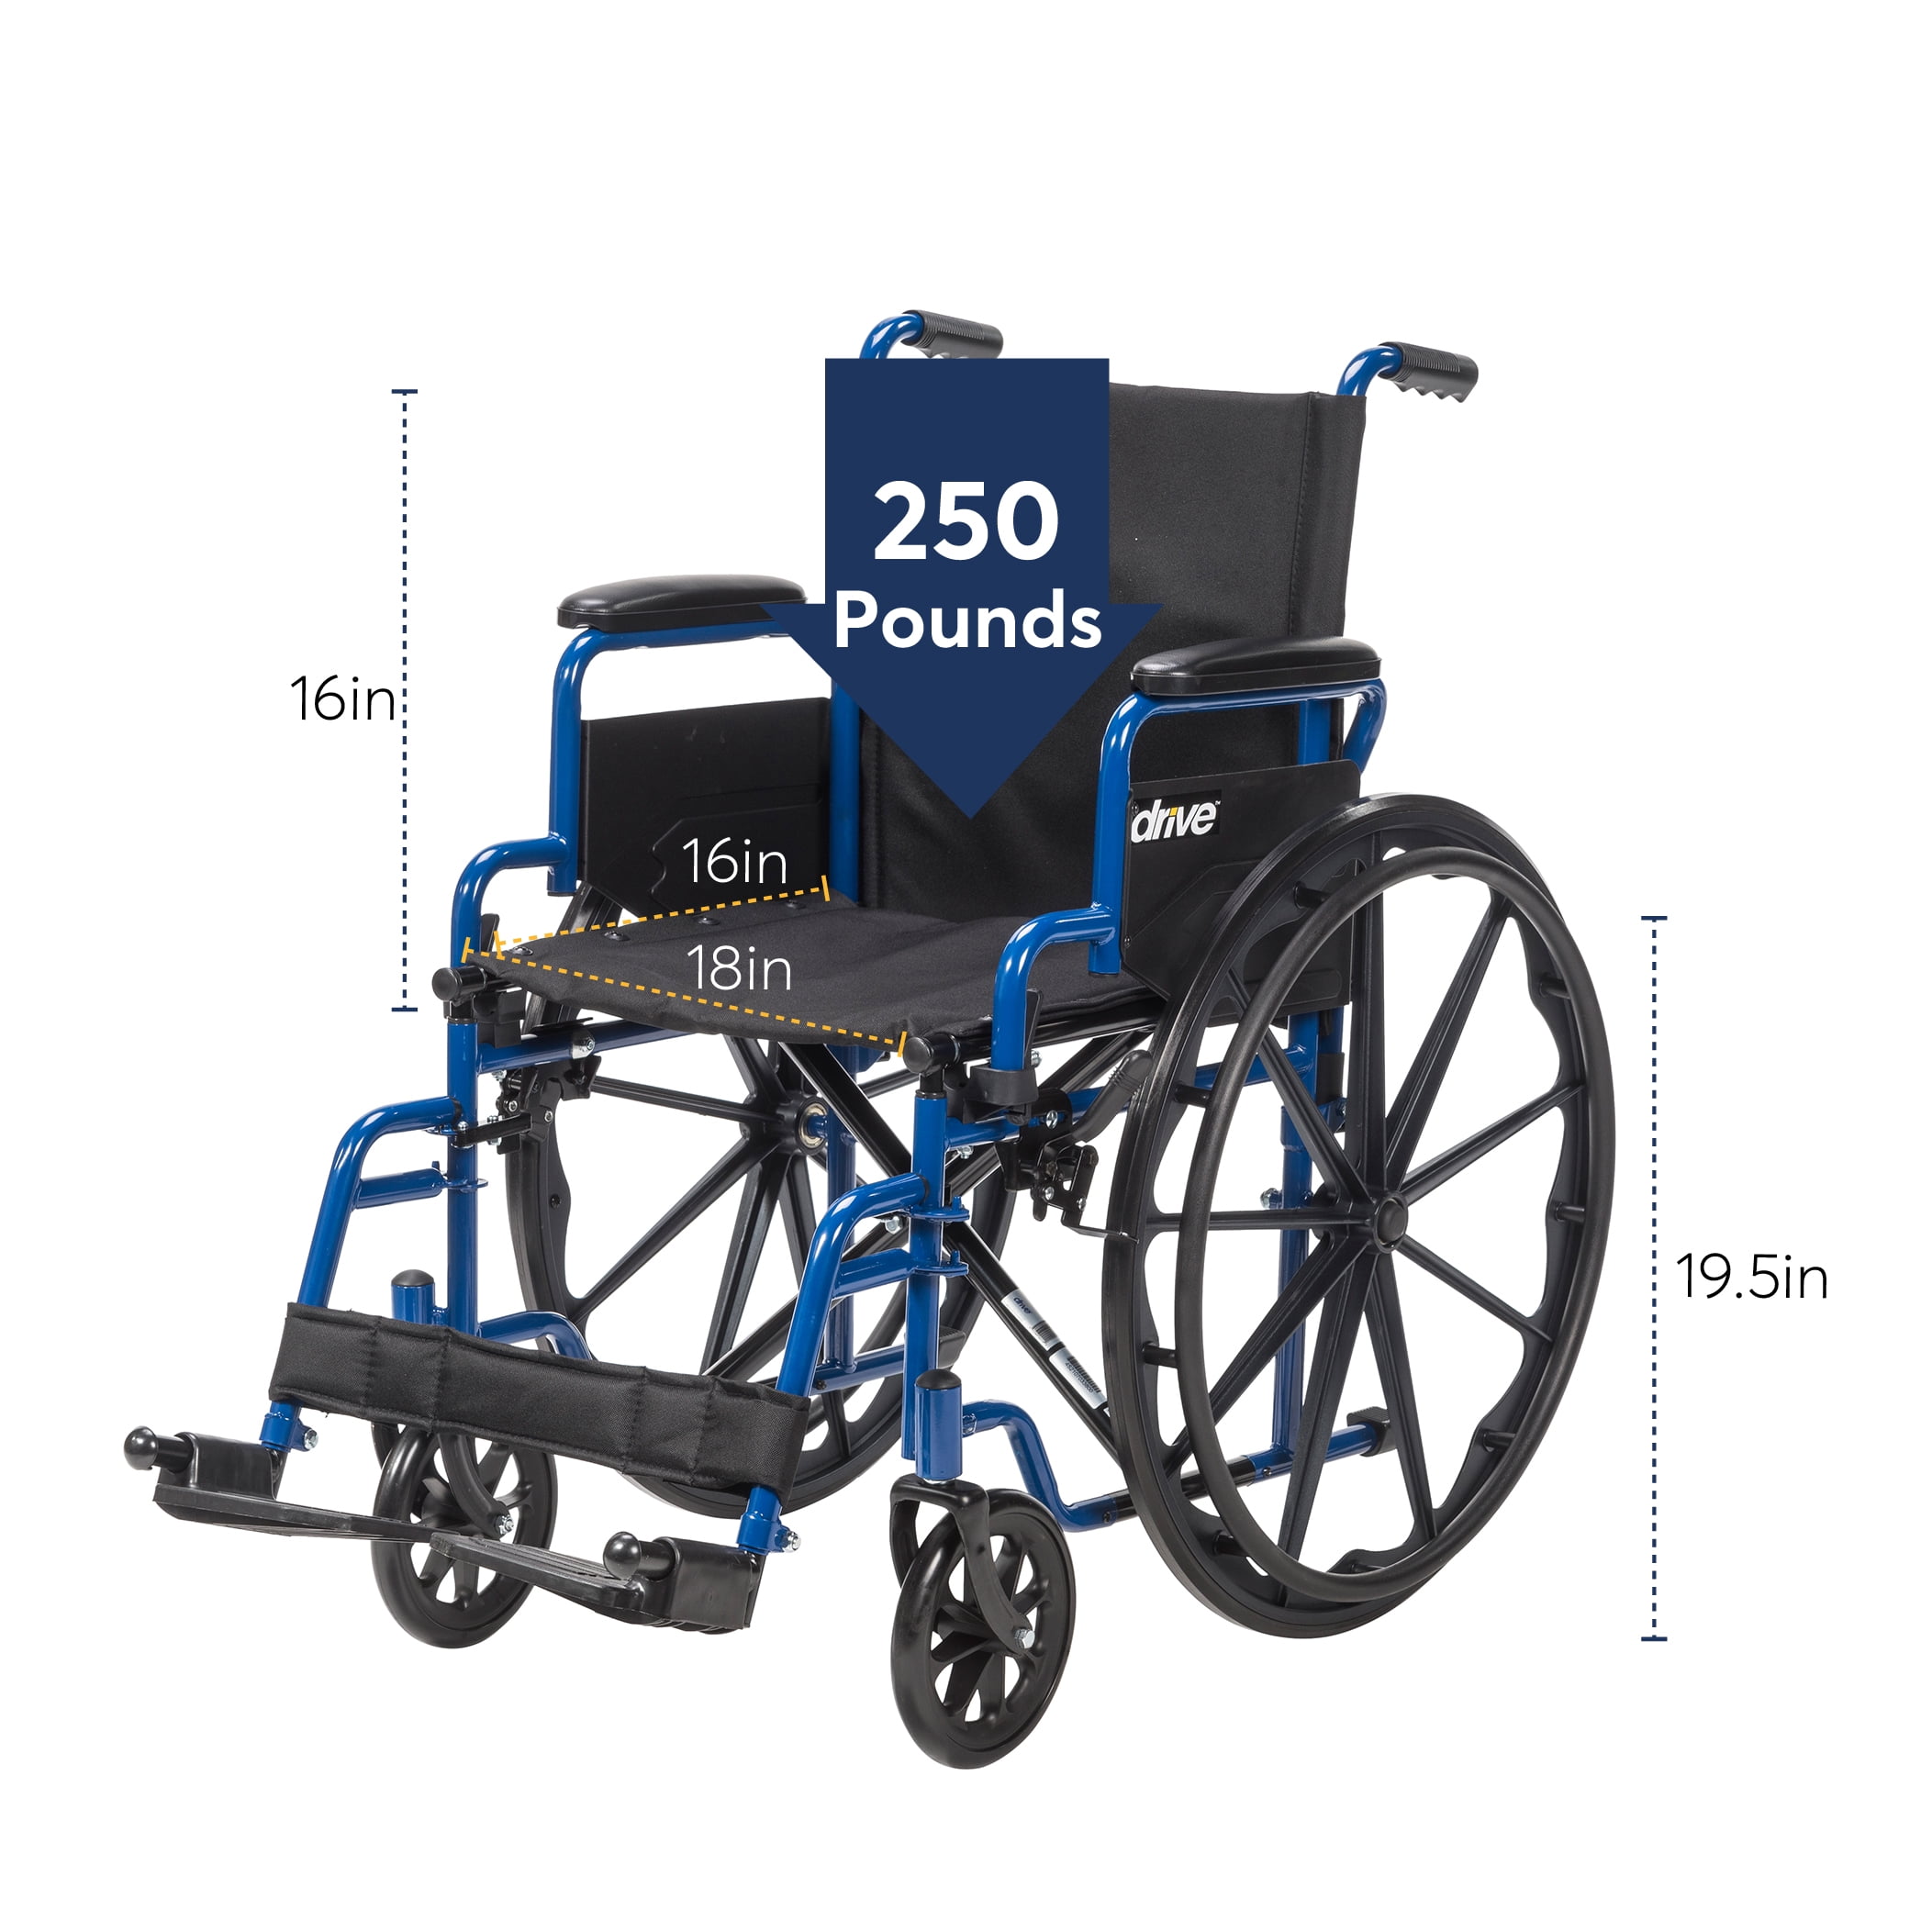 [:fr]Chaise roulante blue Streak par Drive Medical[:en]Blue streak  wheelchair by Drive Medical[:]